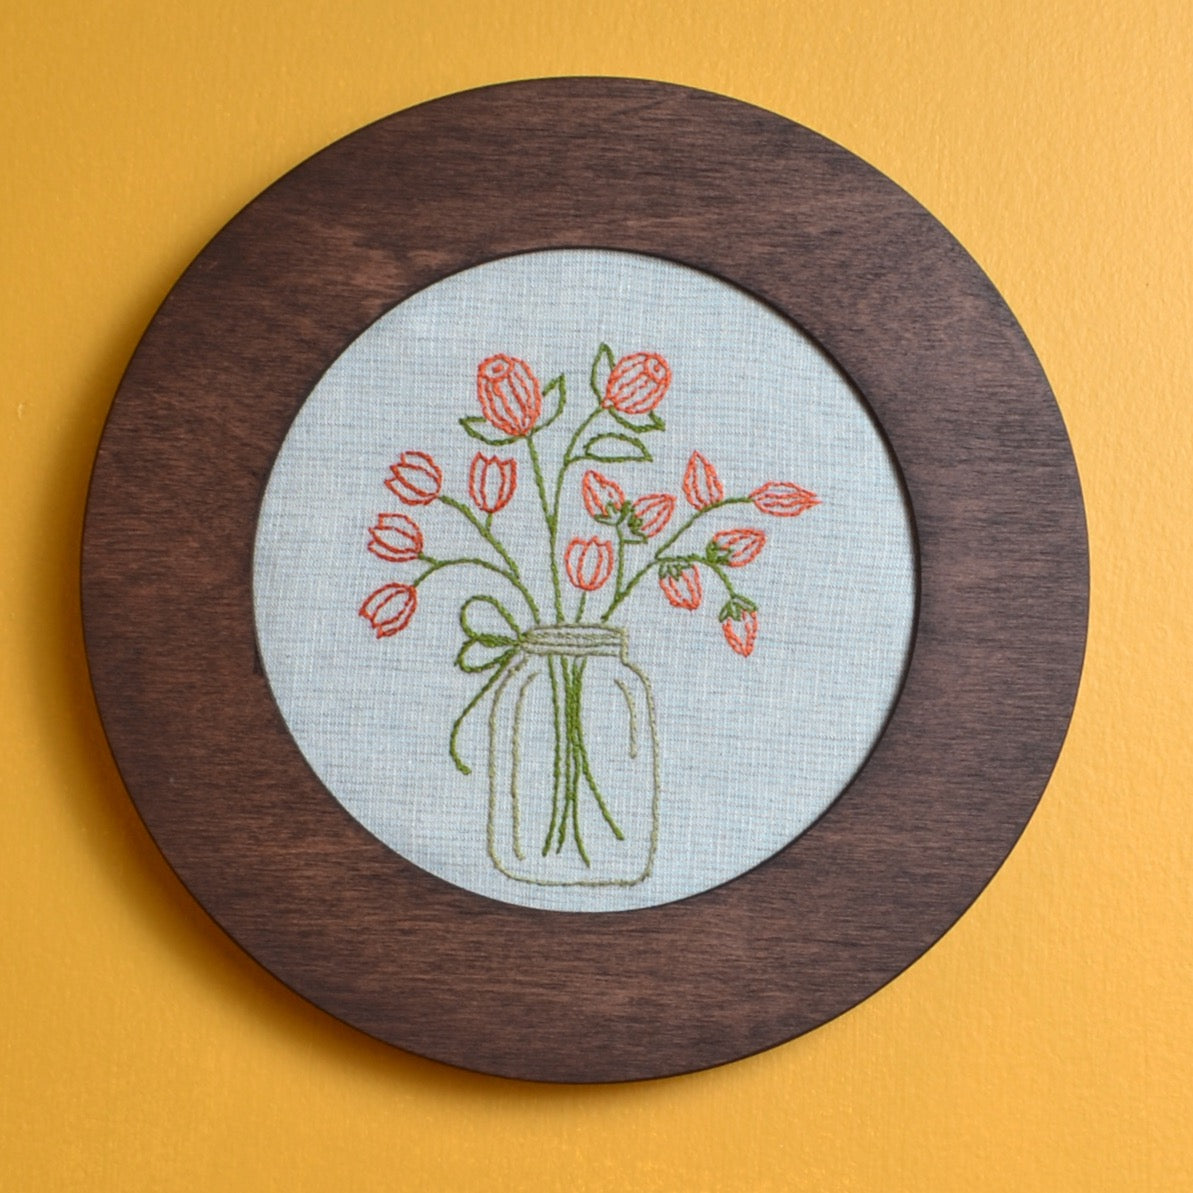 Hoopla embroidery frame